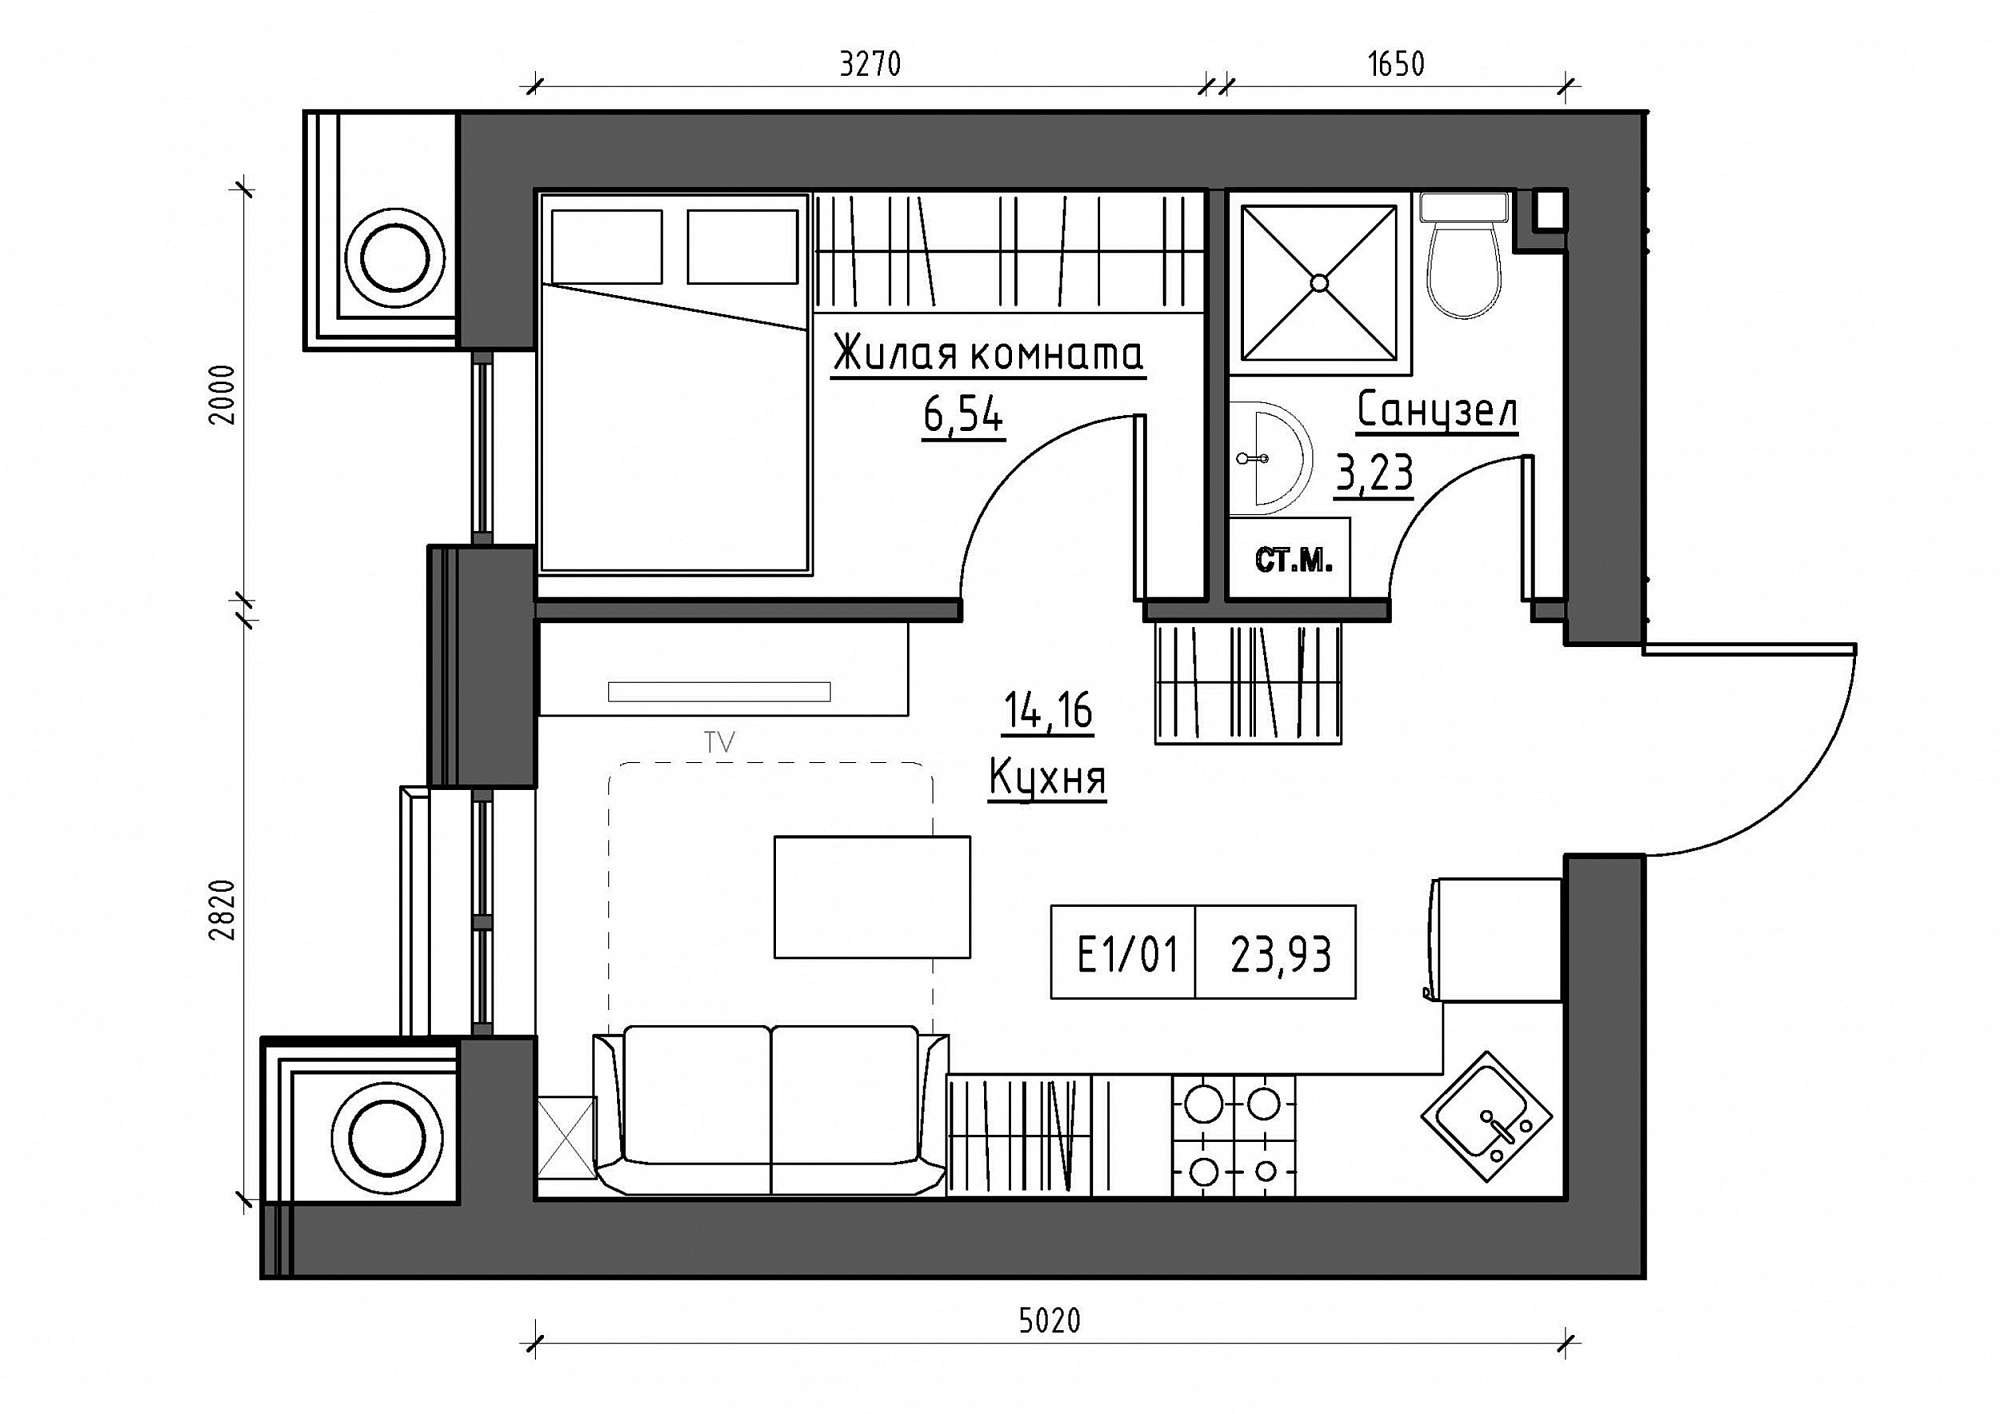 Планировка 1-к квартира площей 23.93м2, KS-012-02/0012.